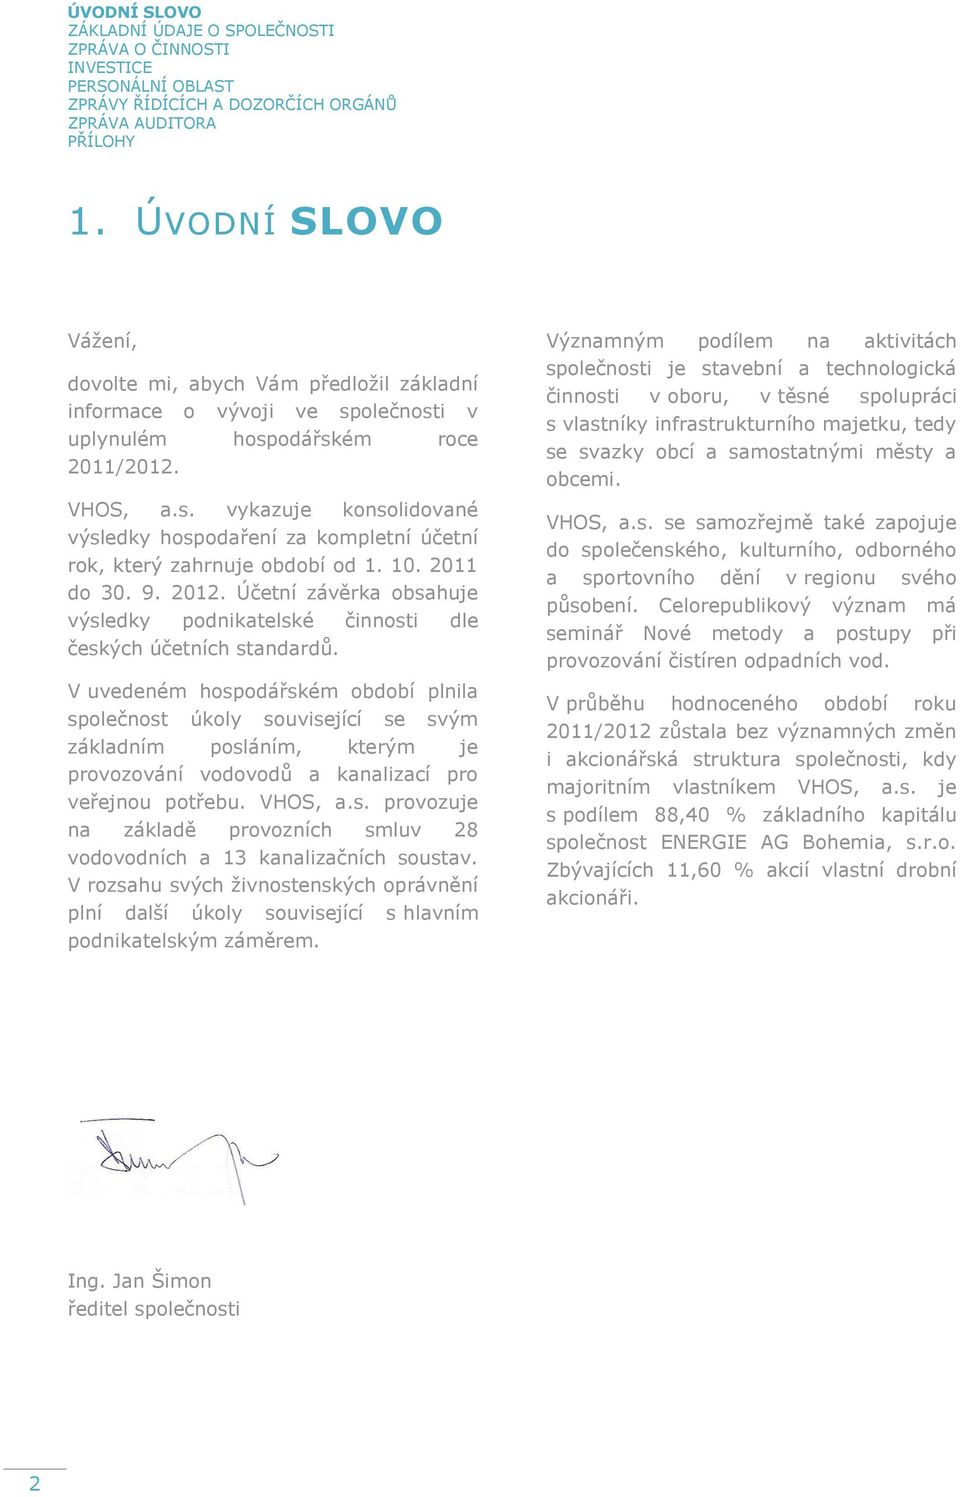 10. 2011 do 30. 9. 2012. Účetní závěrka obsahuje výsledky podnikatelské činnosti dle českých účetních standardů.